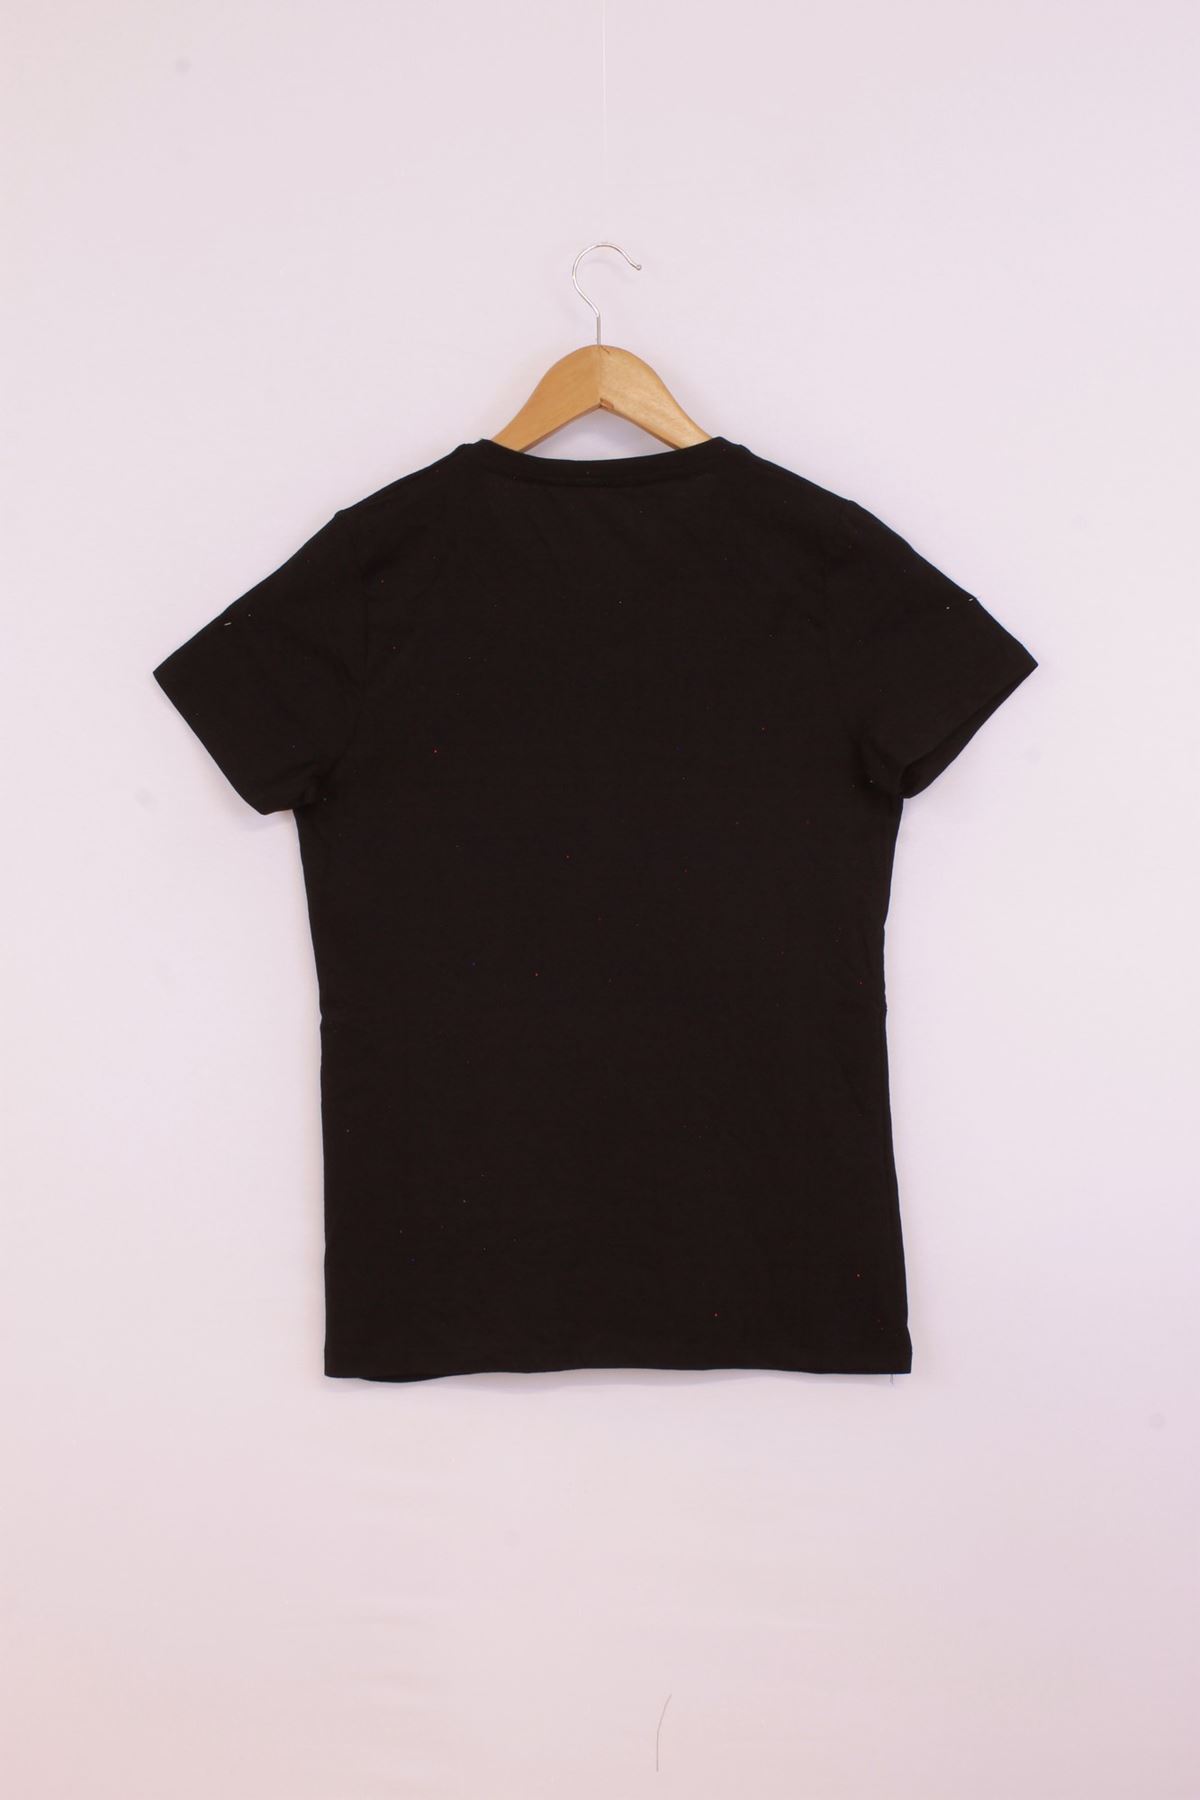 Giyinsen Kadın Siyah Tişört - 23YL71595016